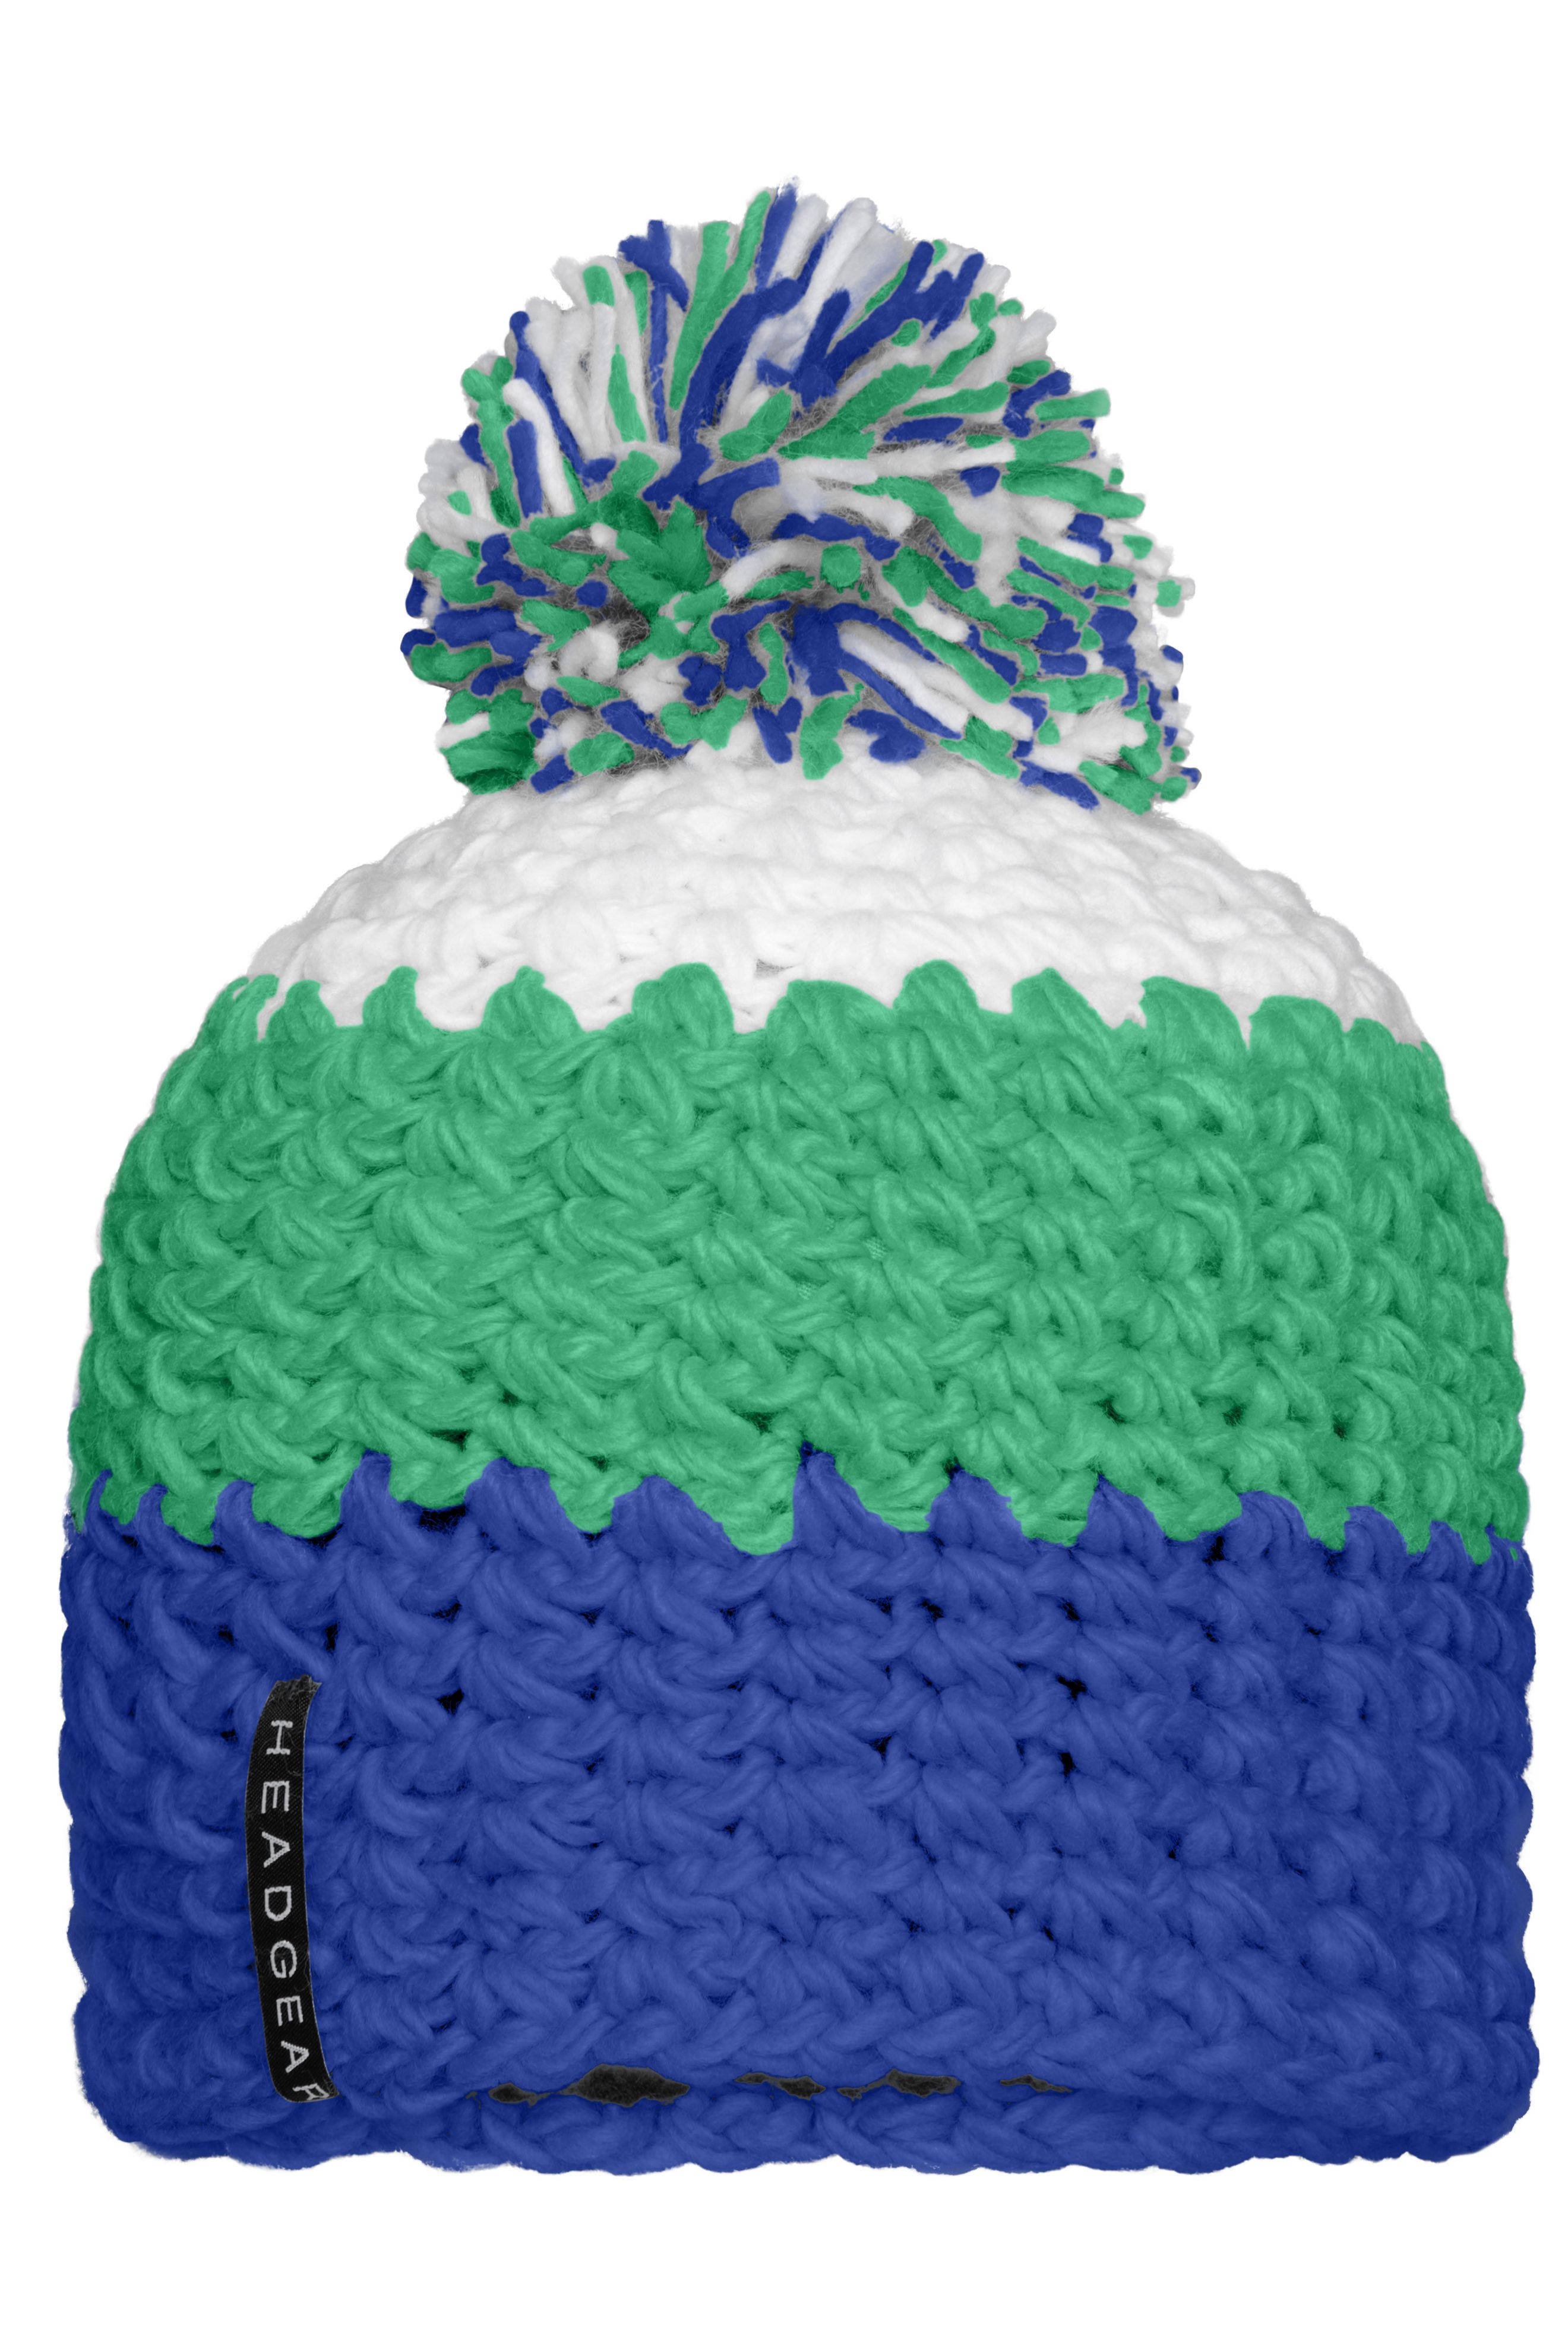 Crocheted Cap with Pompon MB7940 Angesagte 3-farbige Häkelmütze mit Pompon